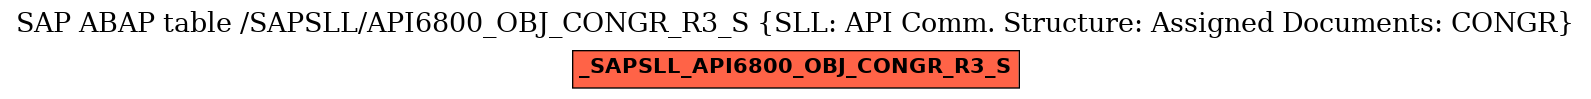 E-R Diagram for table /SAPSLL/API6800_OBJ_CONGR_R3_S (SLL: API Comm. Structure: Assigned Documents: CONGR)